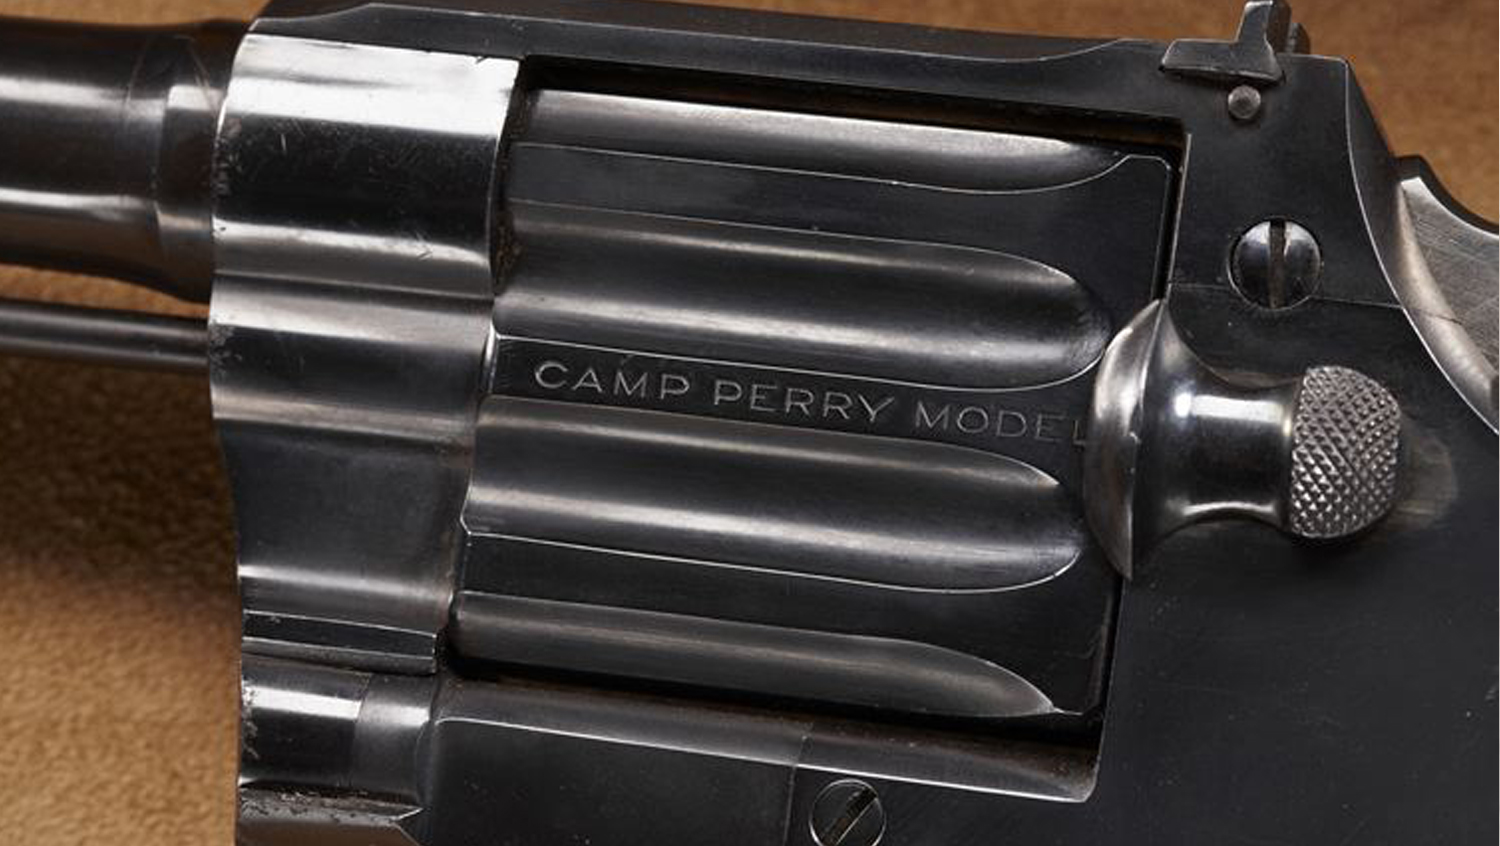 History in a Handgun: Julian Hatcher’s Colt Camp Perry Pistol 